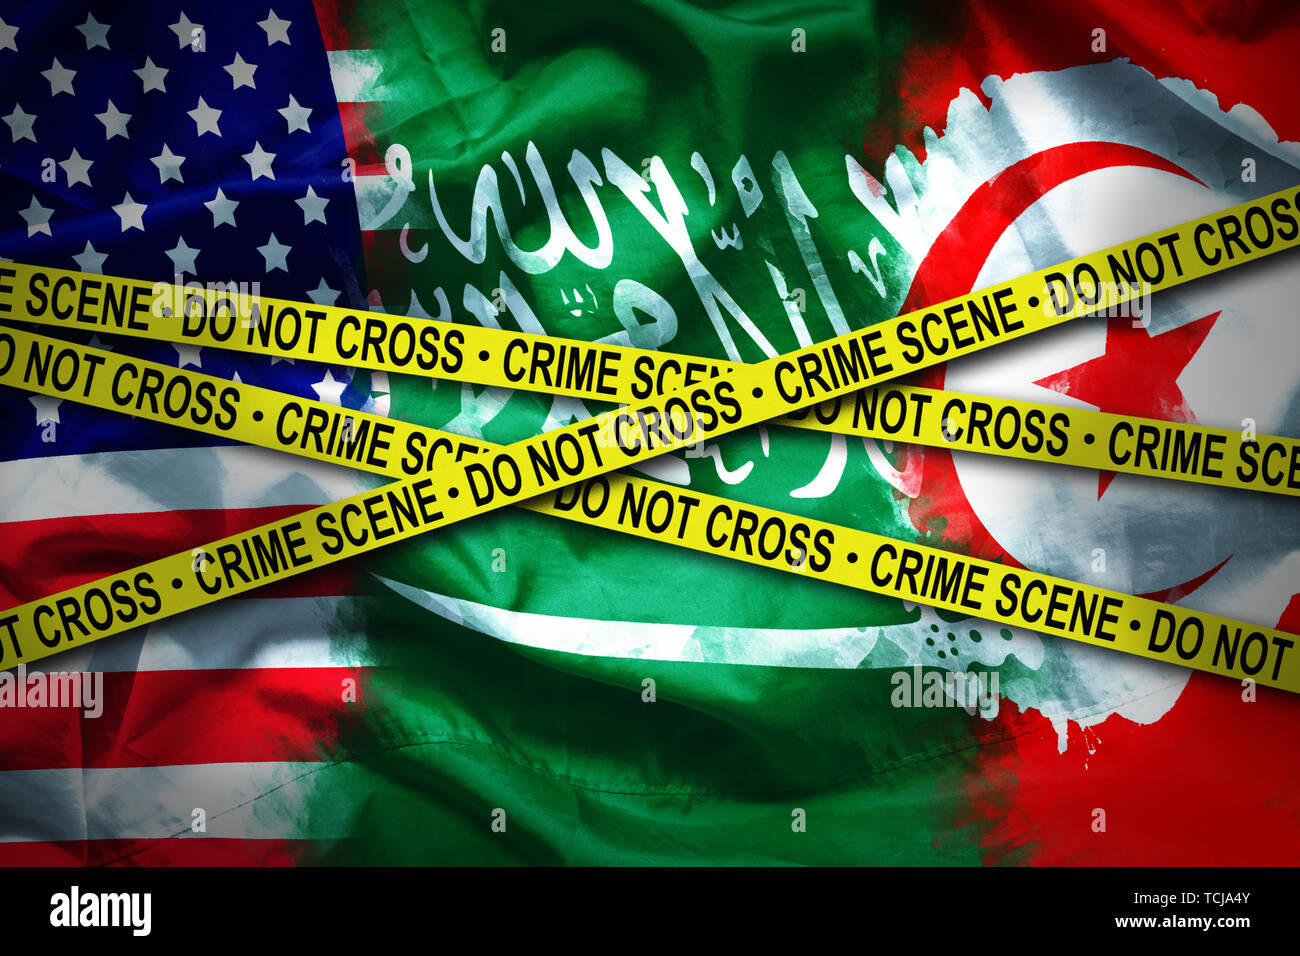 Indicateurs pour les 3 pays connecté. scène de crime meurtre de journaliste saoudien qui ont trouvé refuge dans les Etats Unis d Amérique a été tuer en Arabie Saoudite Ambassade Banque D'Images